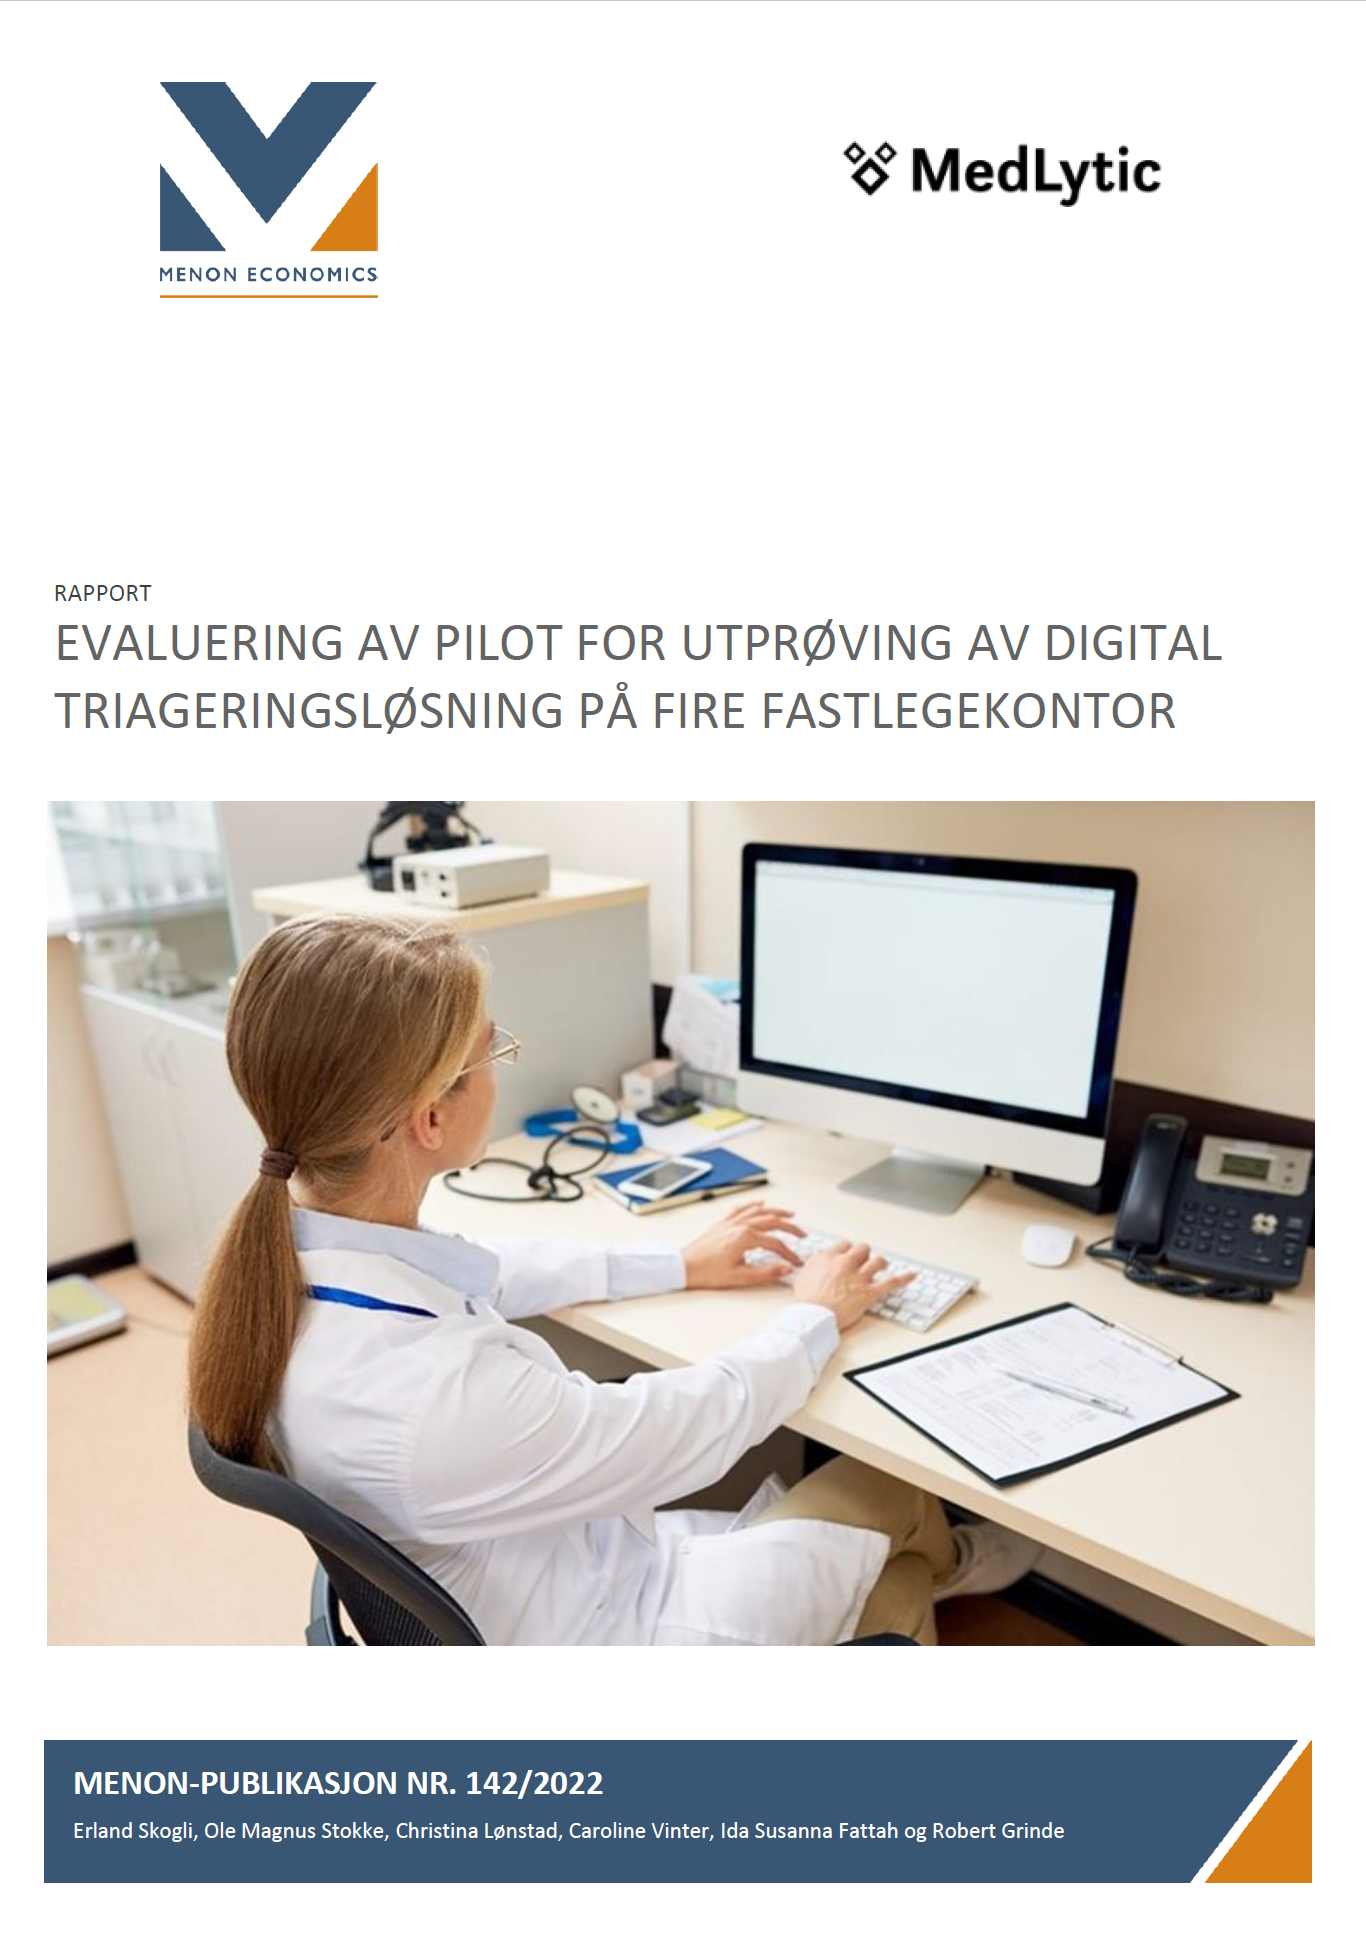 Evaluering av pilot for utprøving av digital triageringsløsning på fire fastlegekontor